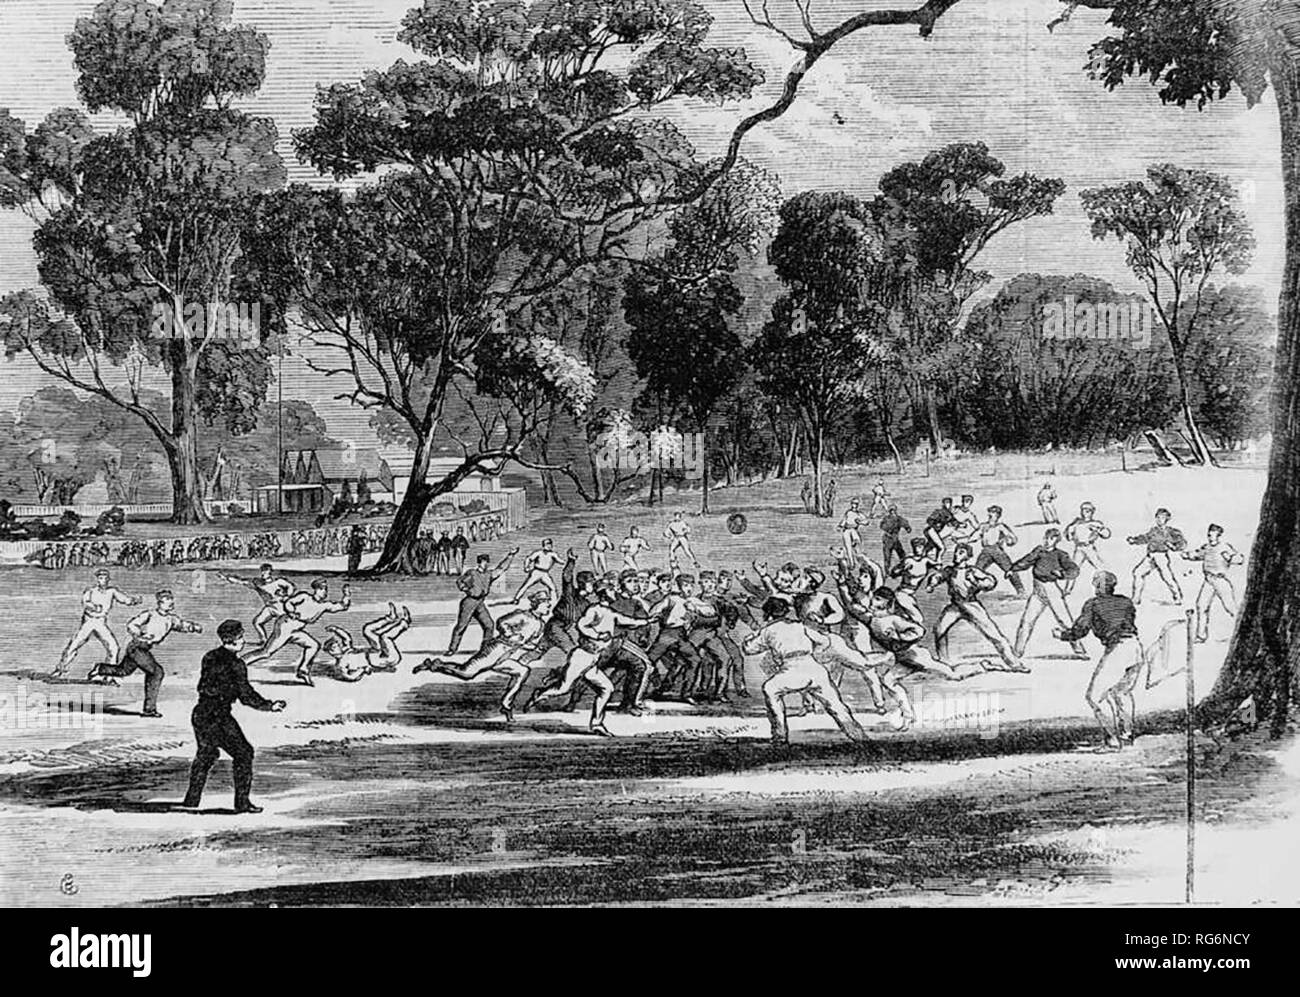 Incisione su legno di un campionato di calcio autraliano corrispondono a Richmond paddock di Melbourne, in circa 1866. L'edificio in background è il Melbourne Cricket Ground pavilion. Luglio 1866 Foto Stock